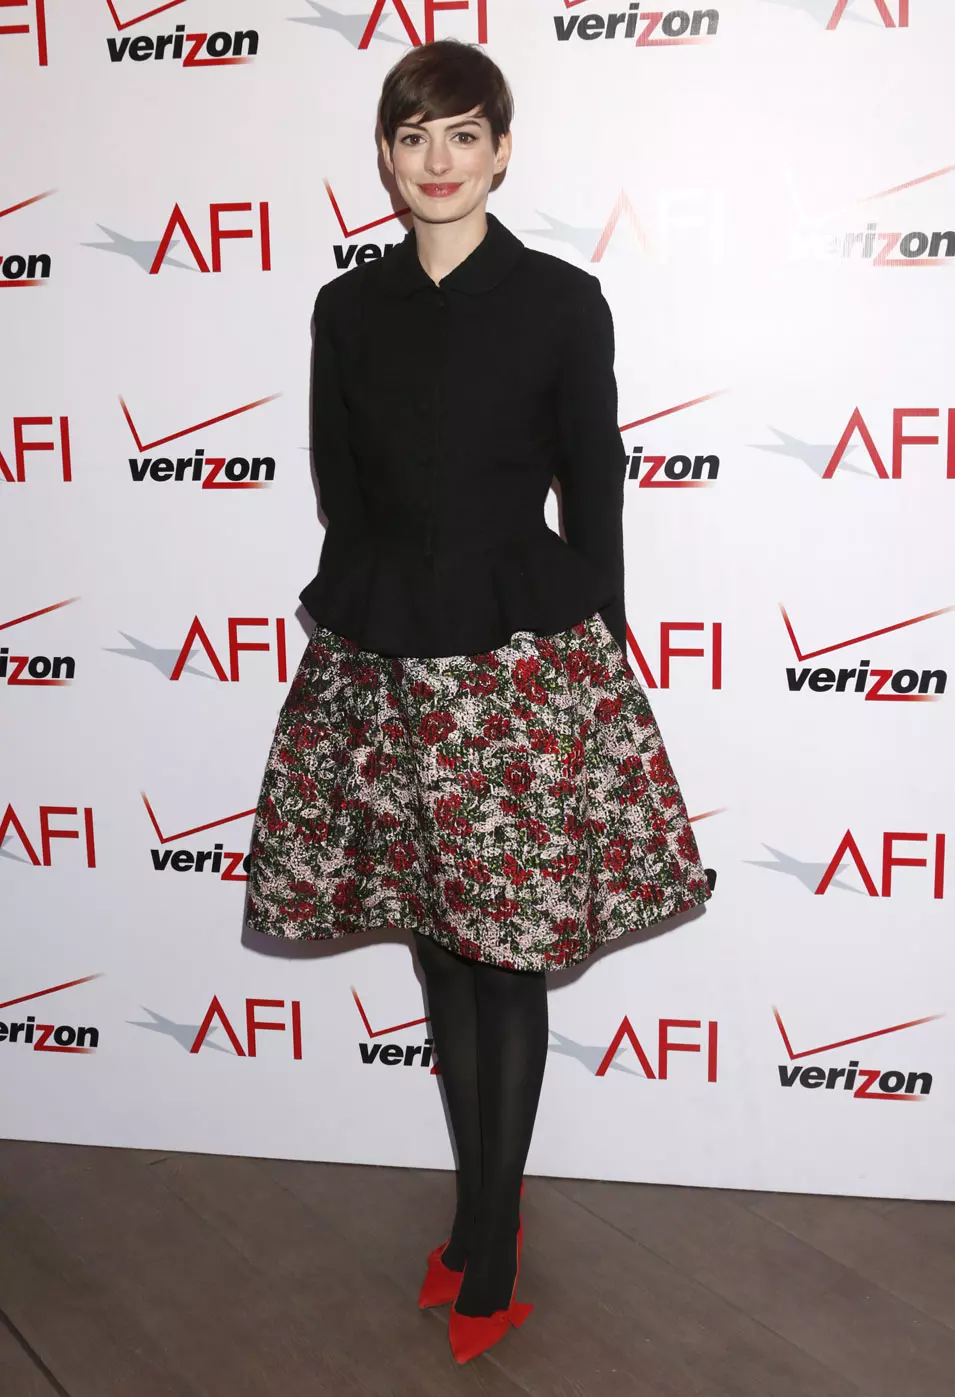 אן האת'ווי לובשת אוסקר דה לה רנטה בטקס פרסי AFI (מכון הסרטים האמריקאי), 11 פברואר 2013